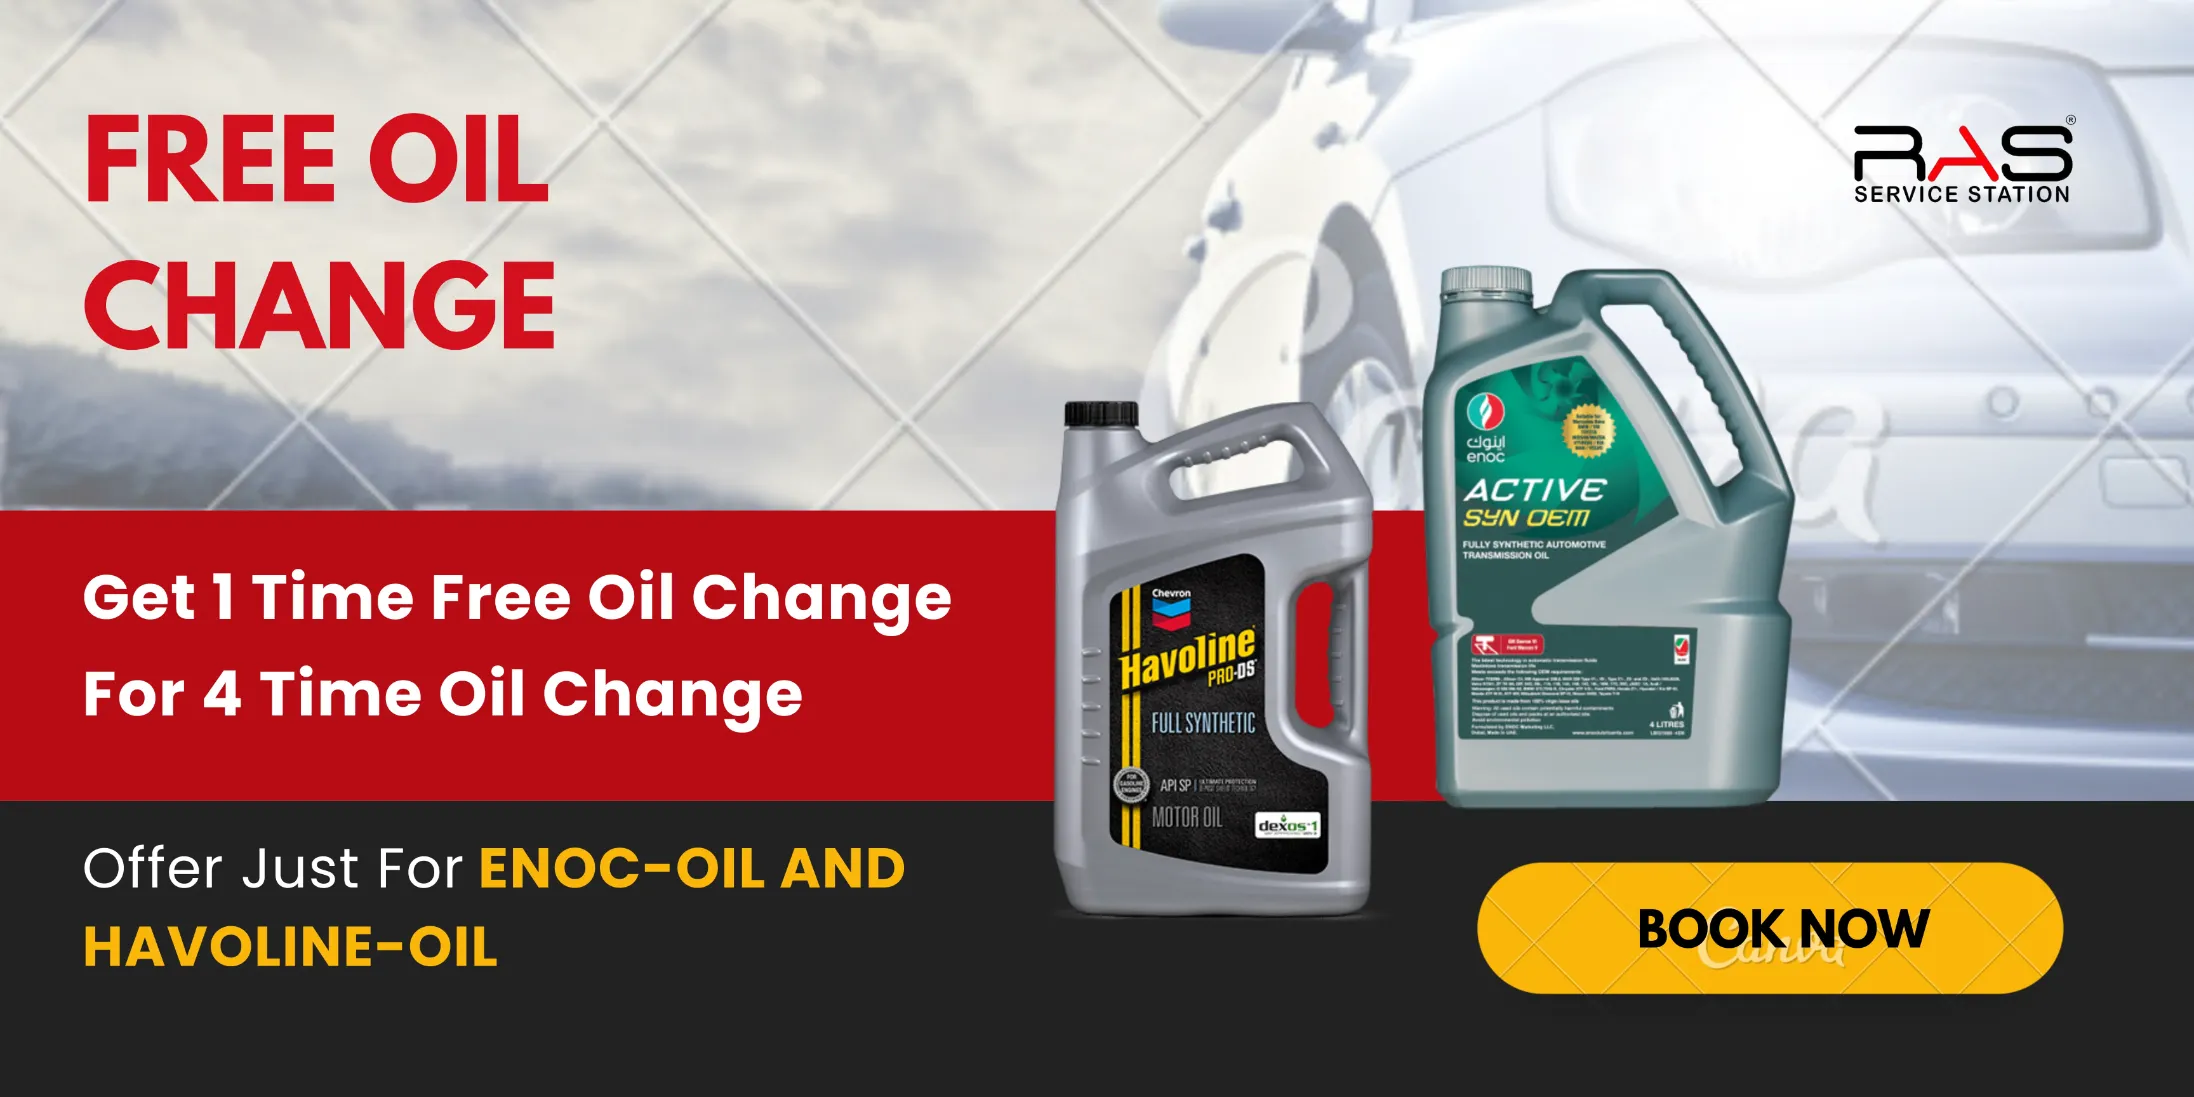 Premium Car Oil Change Service Provider in Dubai - RAS Auto Care